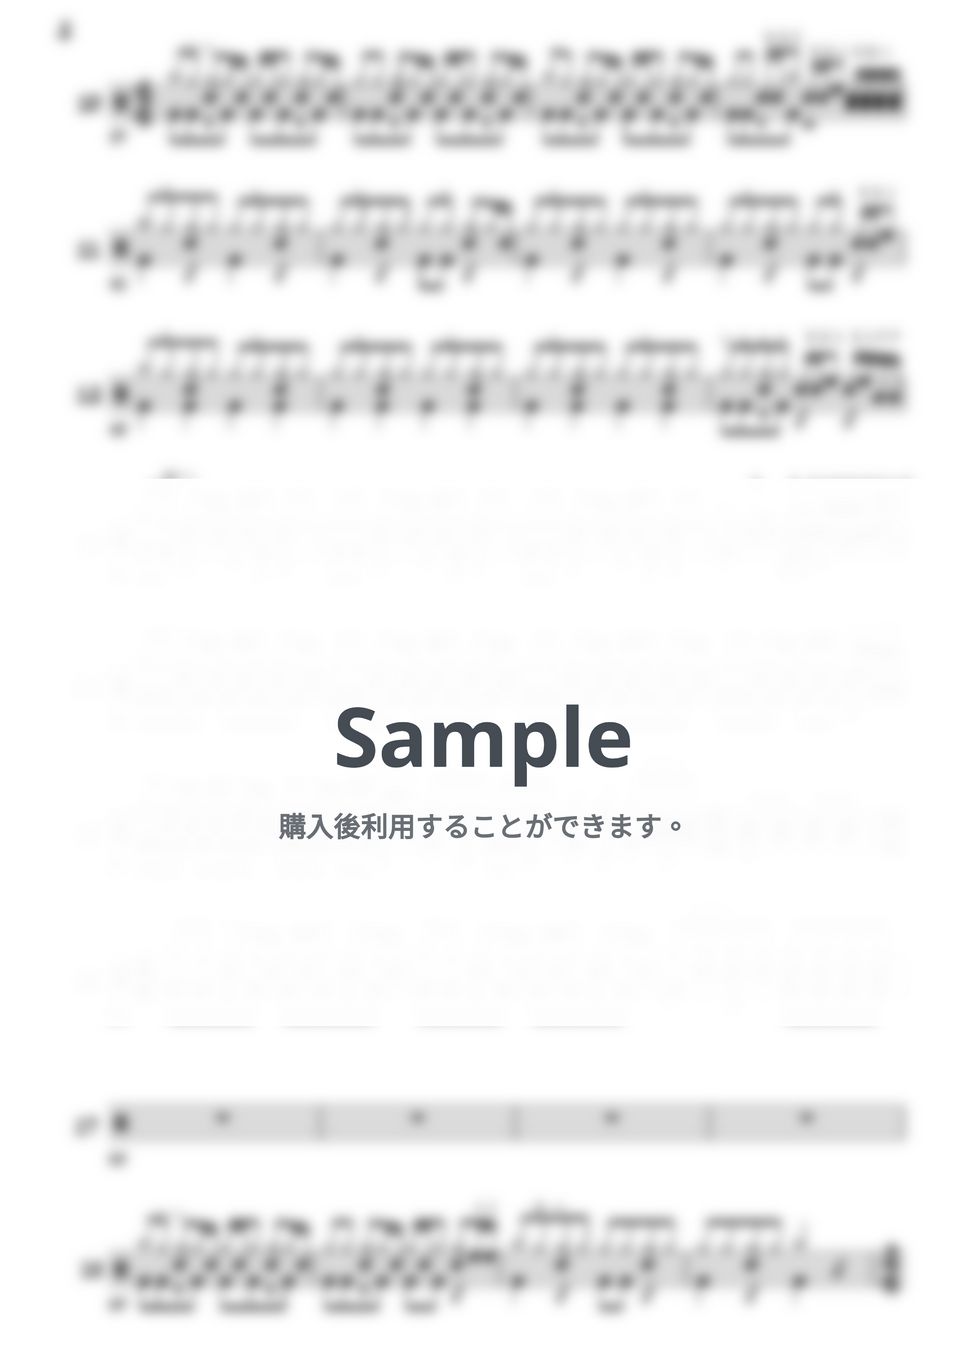 レミオロメン - ３月９日  ☆スピード別練習用動画付き☆ by ドラムってカッコいい。